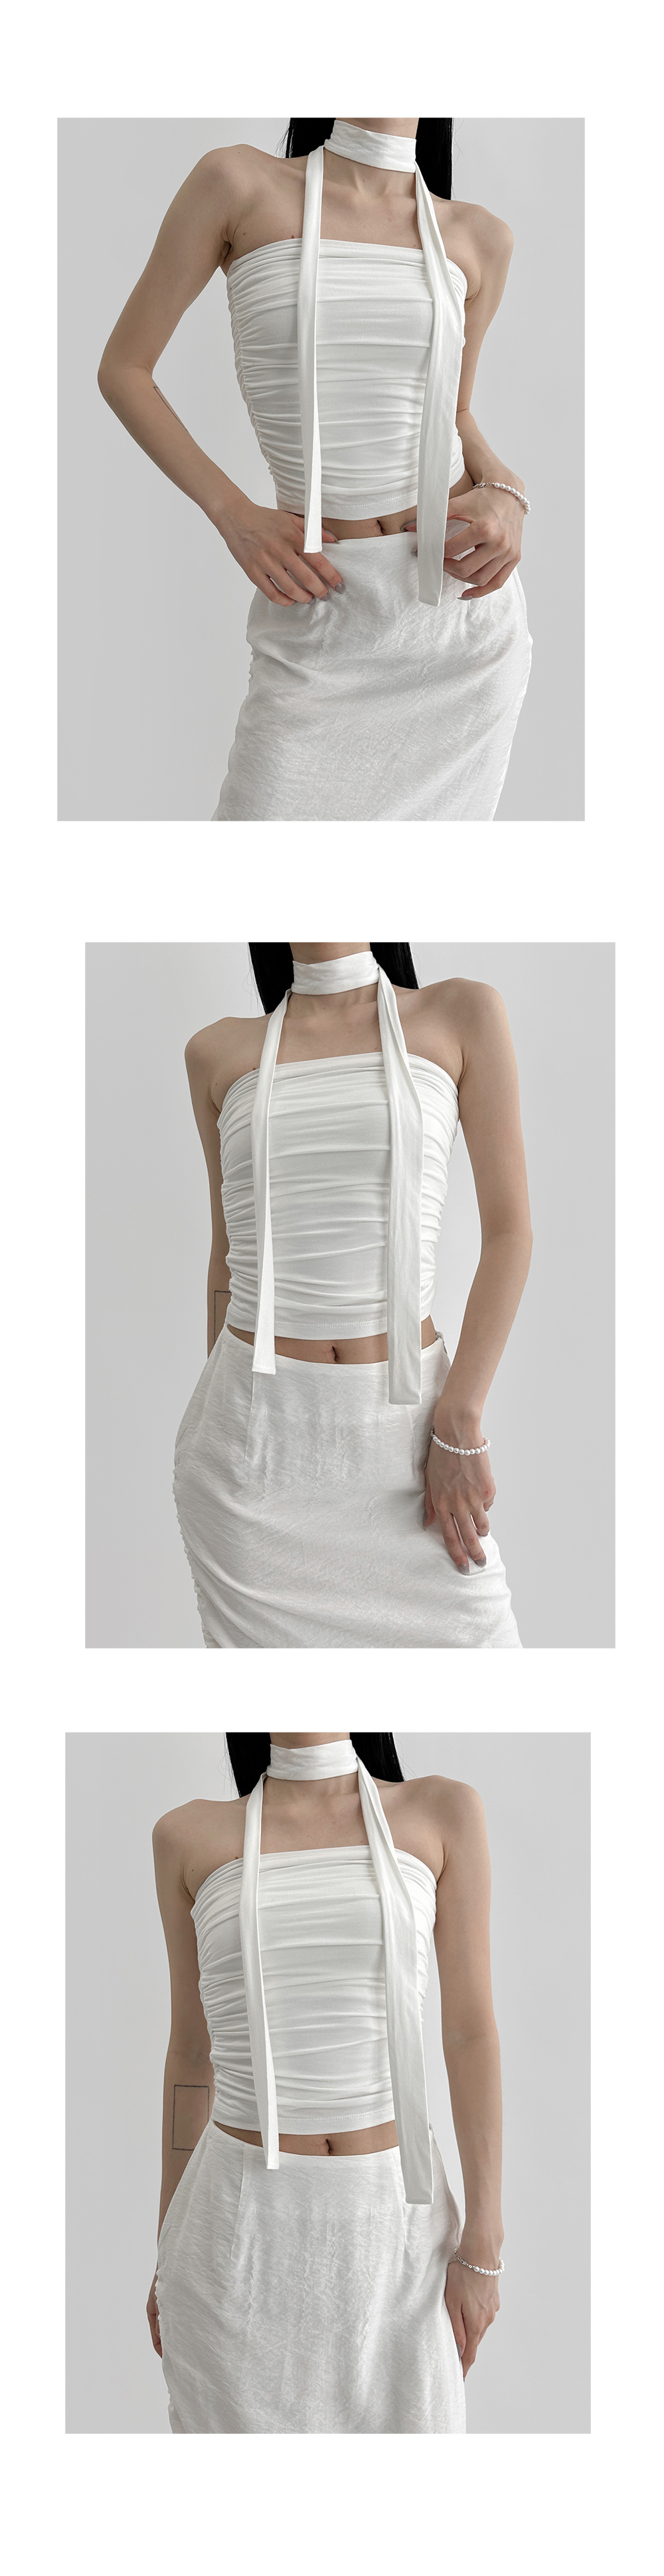 dress white color image-S1L6